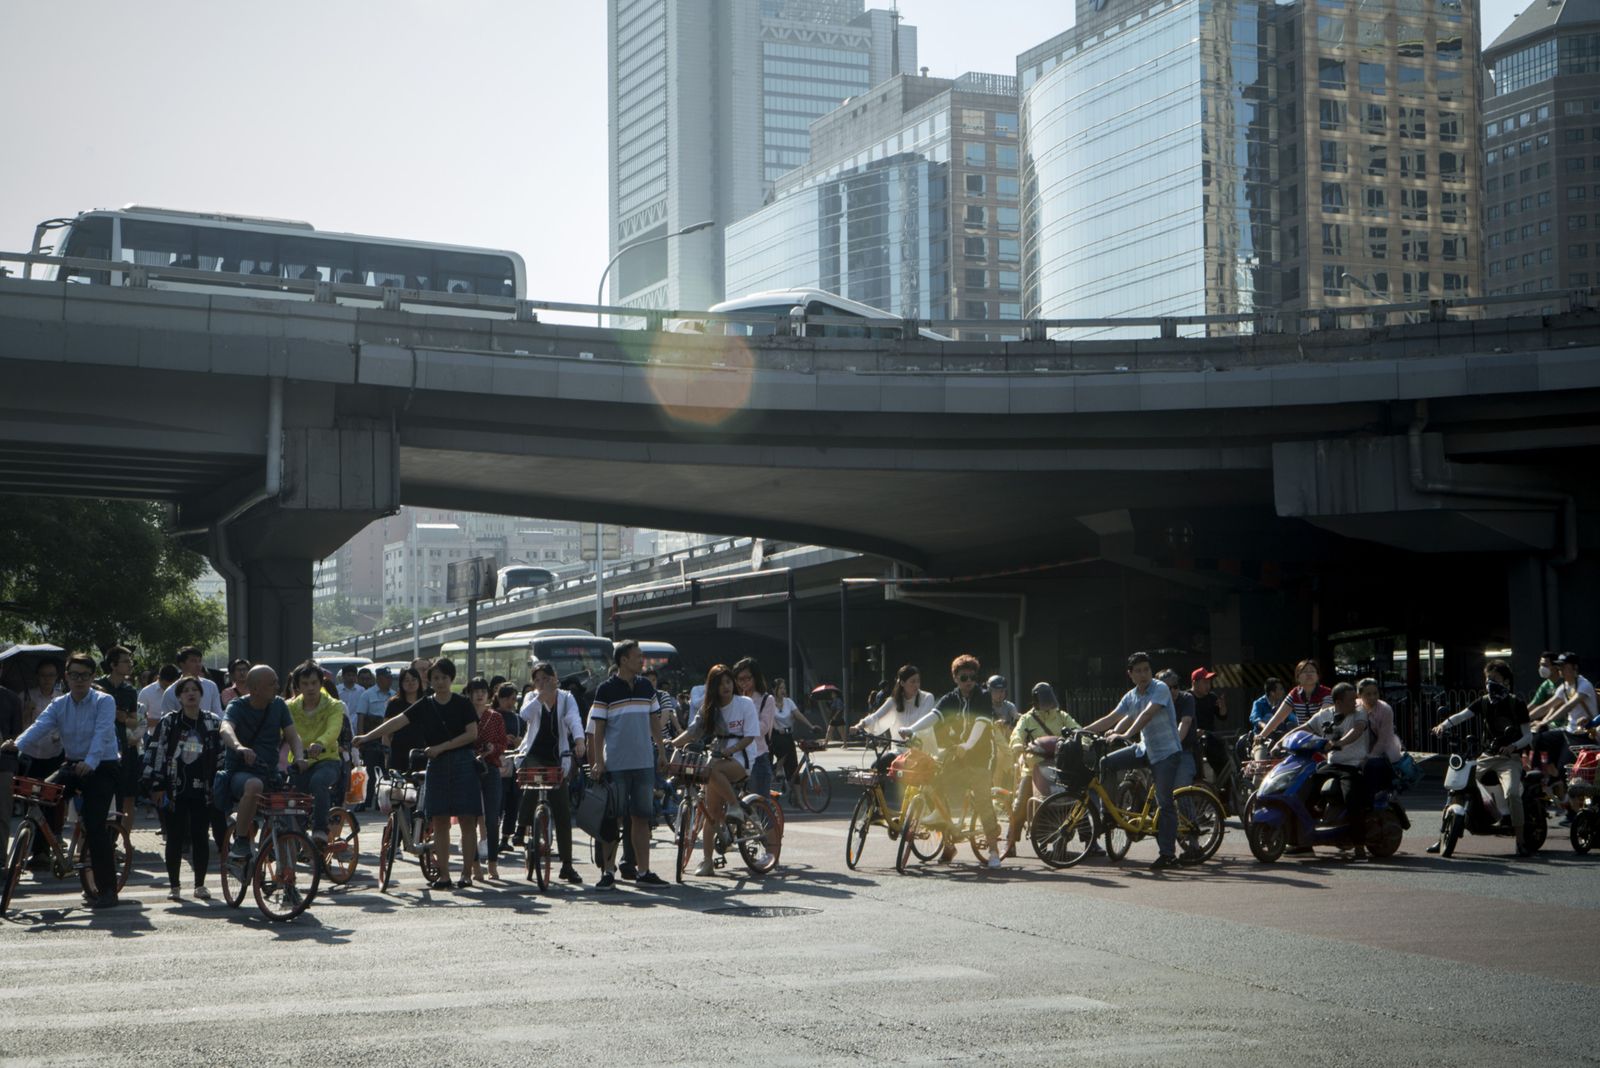 مشاة وراكبو دراجات ينتظرون عند تقاطع في حيّ الأعمال ببكين - 1 يونيو 2018 - Bloomberg